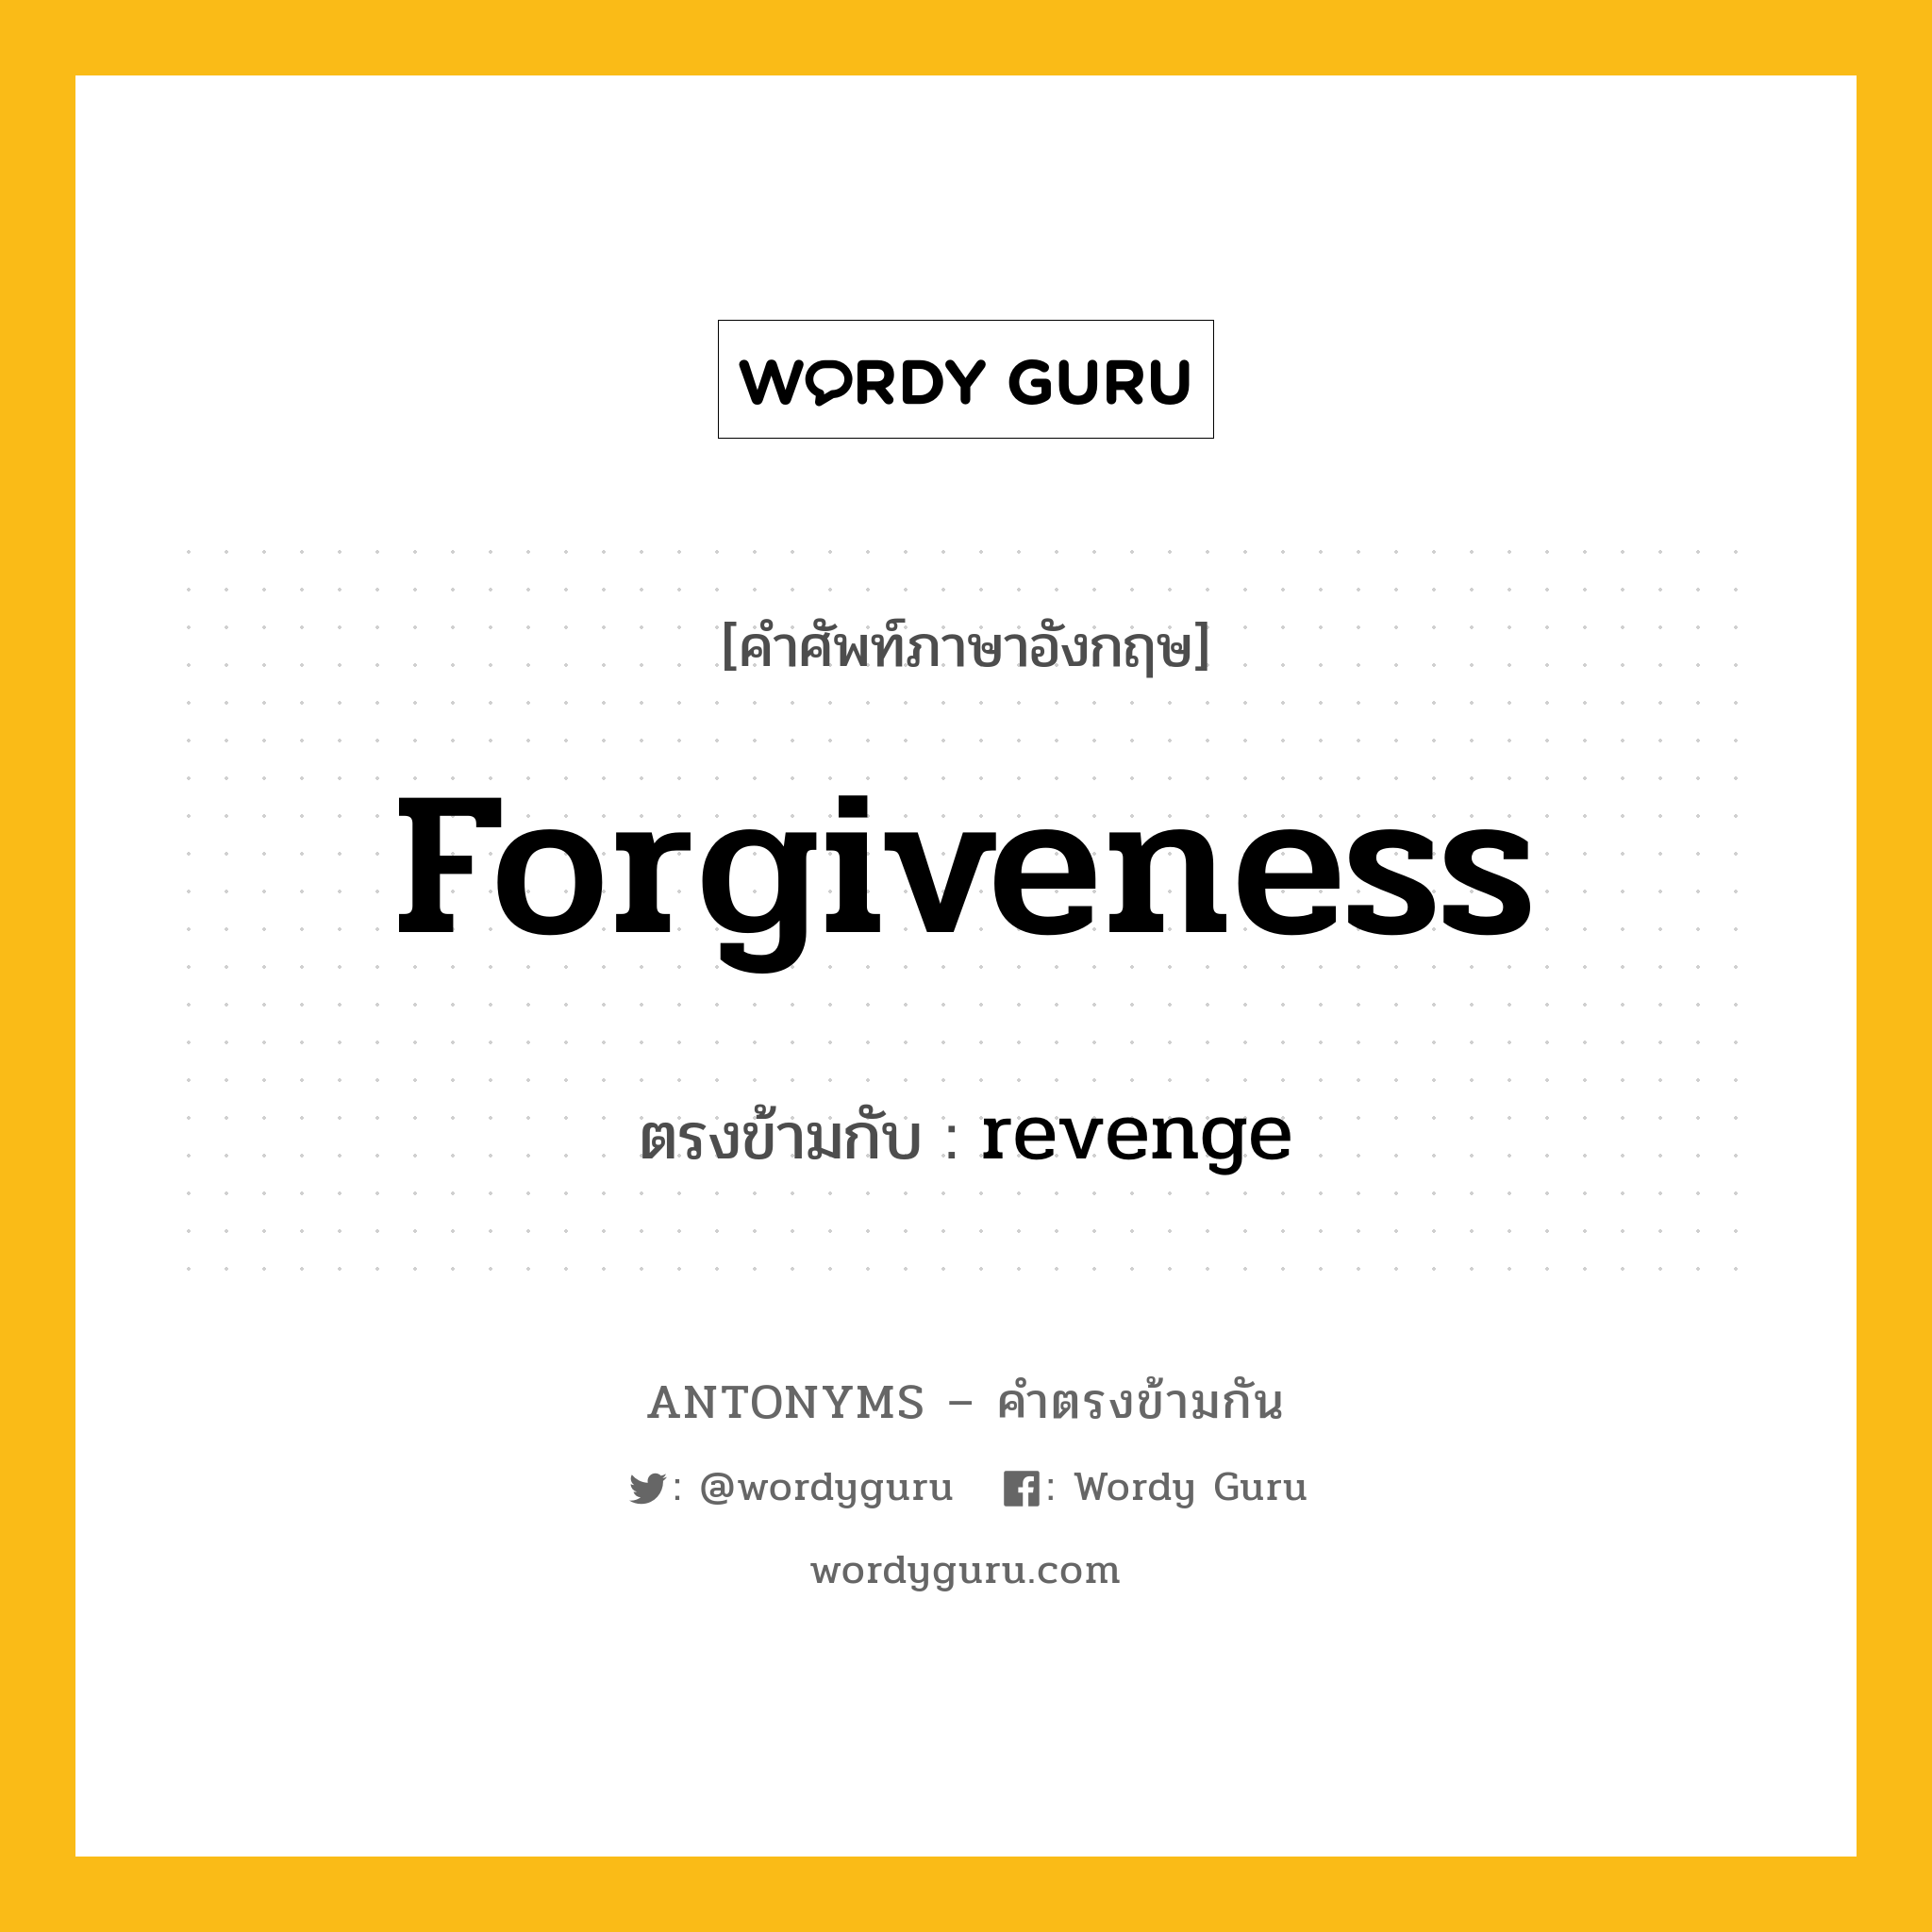 forgiveness เป็นคำตรงข้ามกับคำไหนบ้าง?, คำศัพท์ภาษาอังกฤษ forgiveness ตรงข้ามกับ revenge หมวด revenge